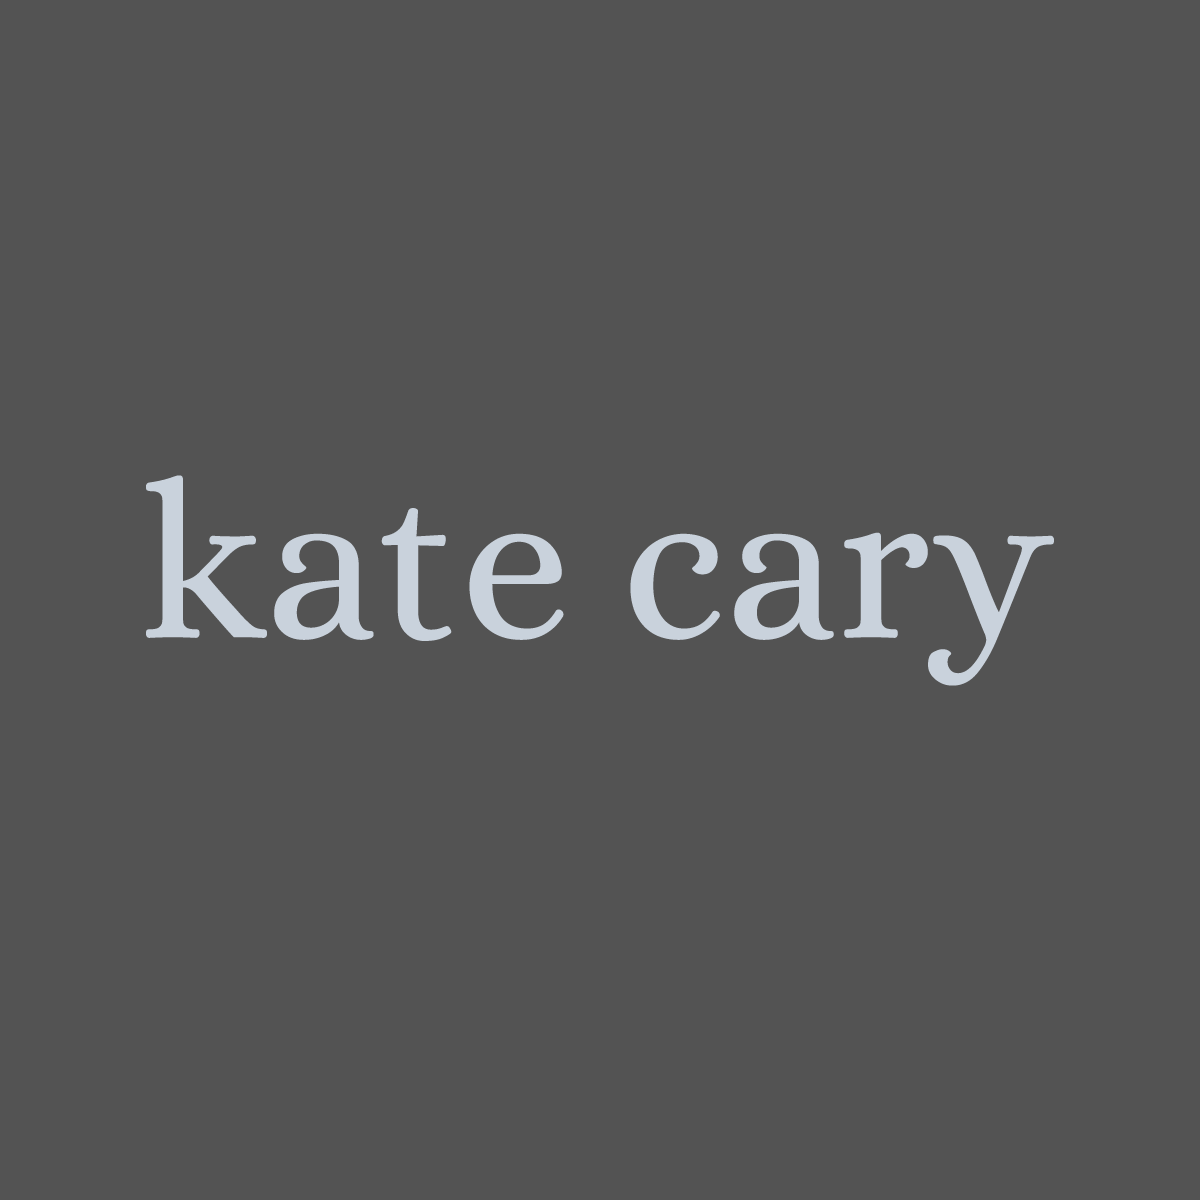 (c) Katecary.co.uk